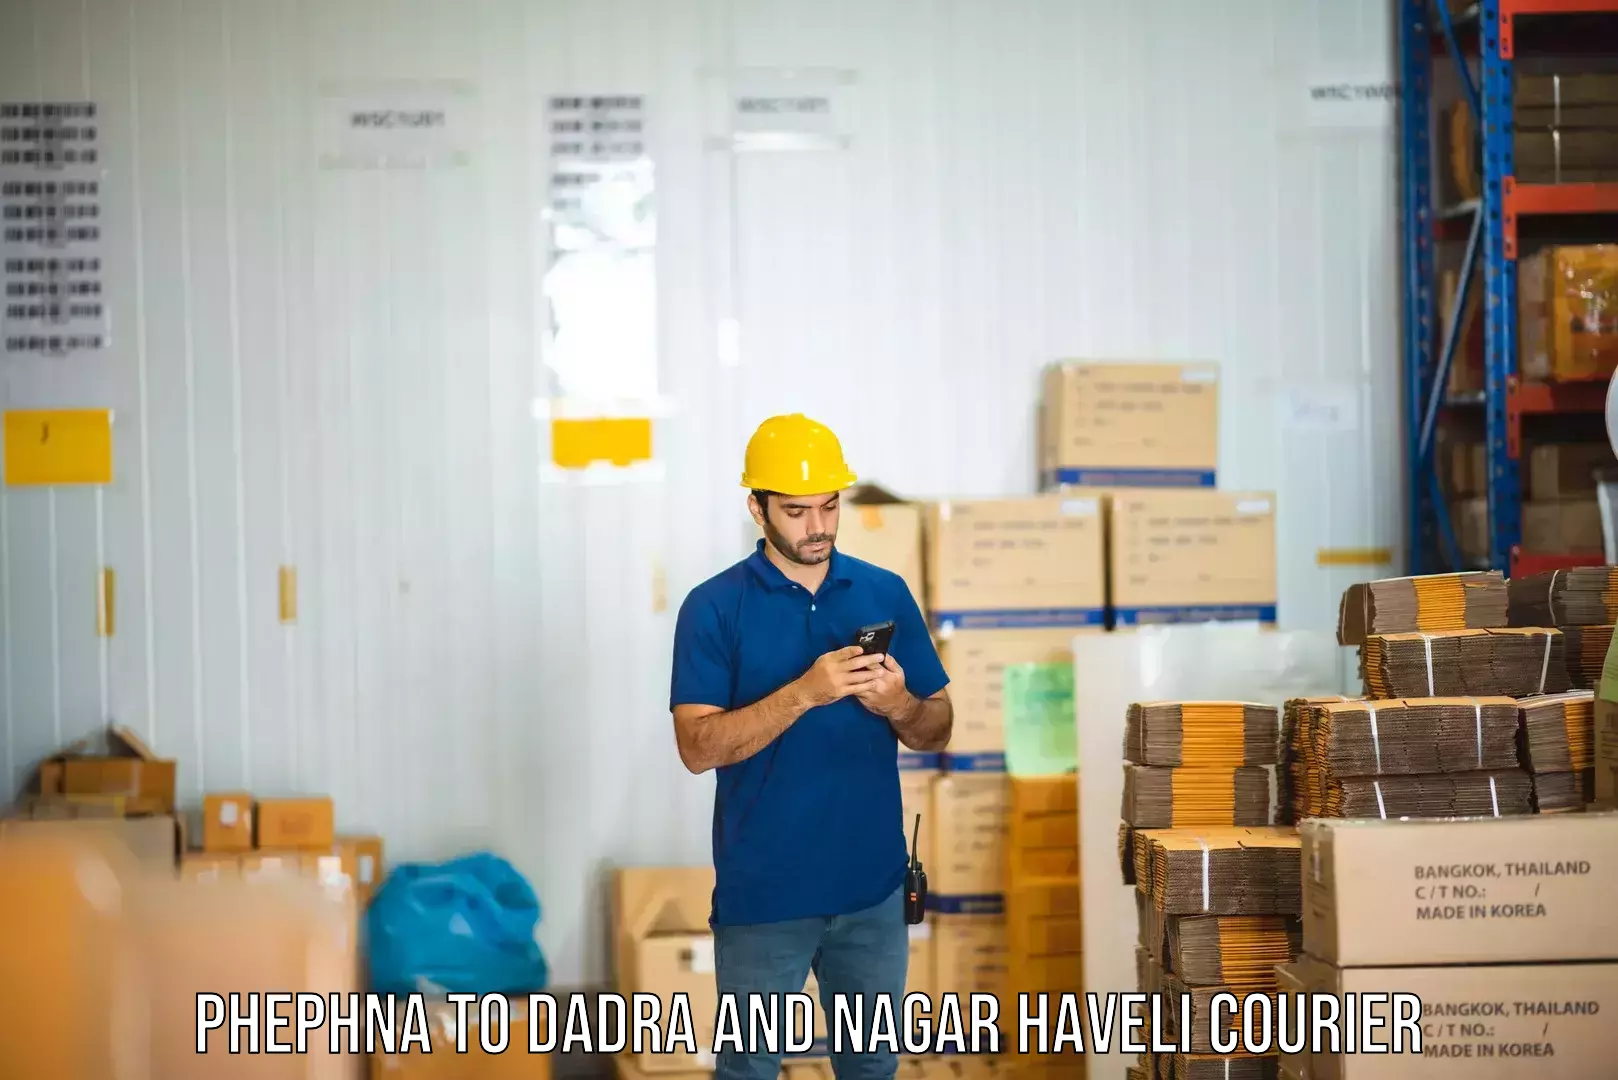 Shipping and handling Phephna to Dadra and Nagar Haveli